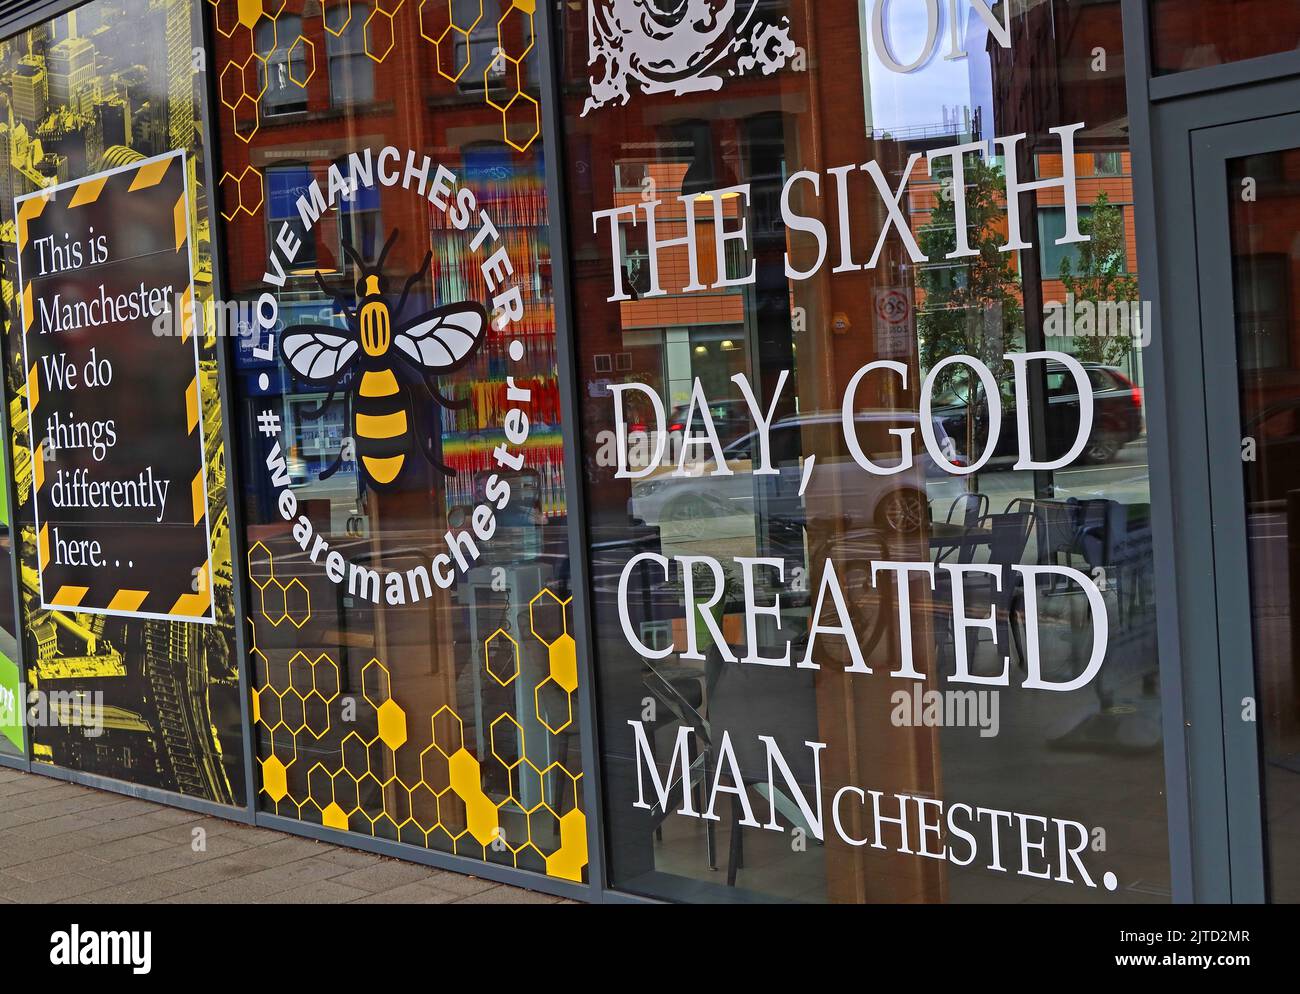 Il sesto giorno, Dio ha creato Manchester, LoveManchester, WeLoveManchester, questo è Manchester, facciamo le cose diversamente qui Foto Stock